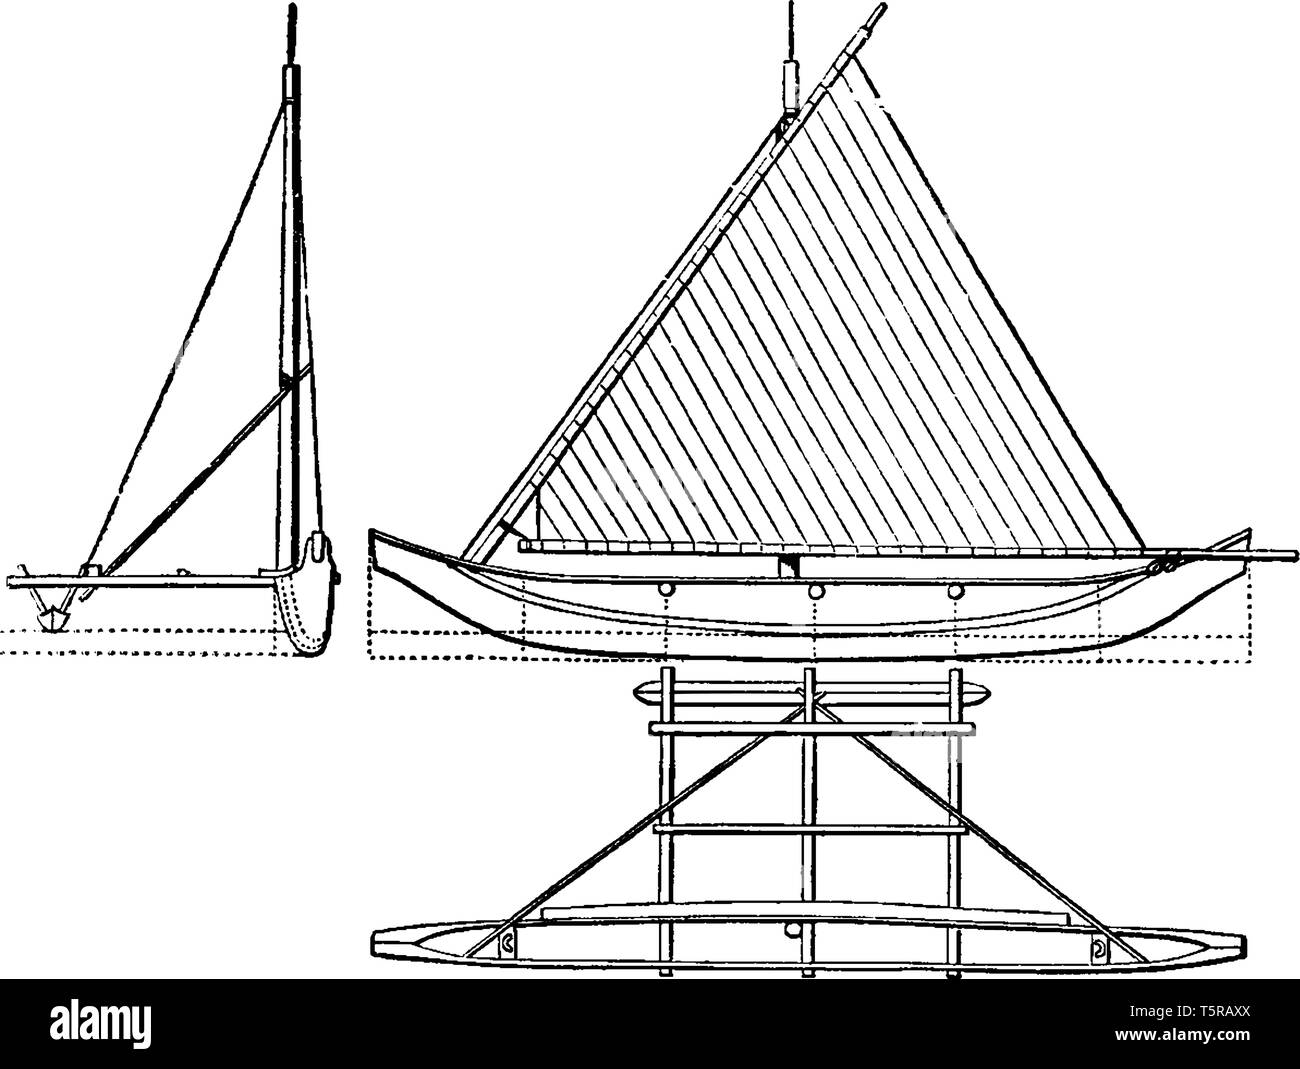 La vista in elevazione della Proa è un tipo di imbarcazione a vela con scafi multipli, vintage disegno della linea di incisione o illustrazione. Illustrazione Vettoriale